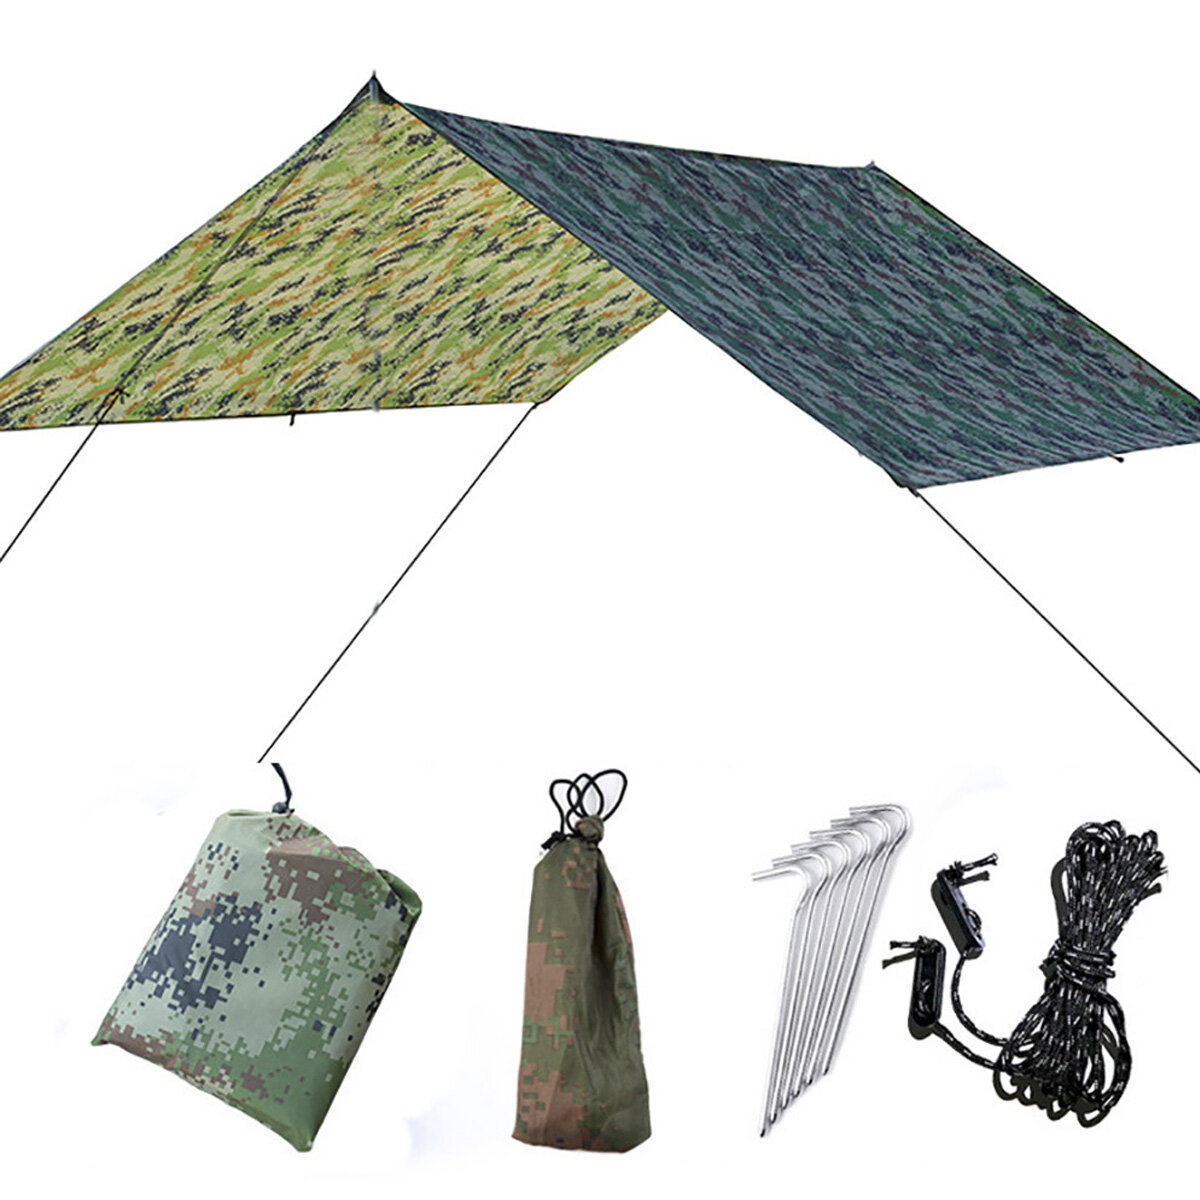 30×29cm markiza przeciwsłoneczna Anty-UV, wodoodporna, namiot dachowy wielofunkcyjny, mata piknikowa na zewnątrz, kemping i ogród.